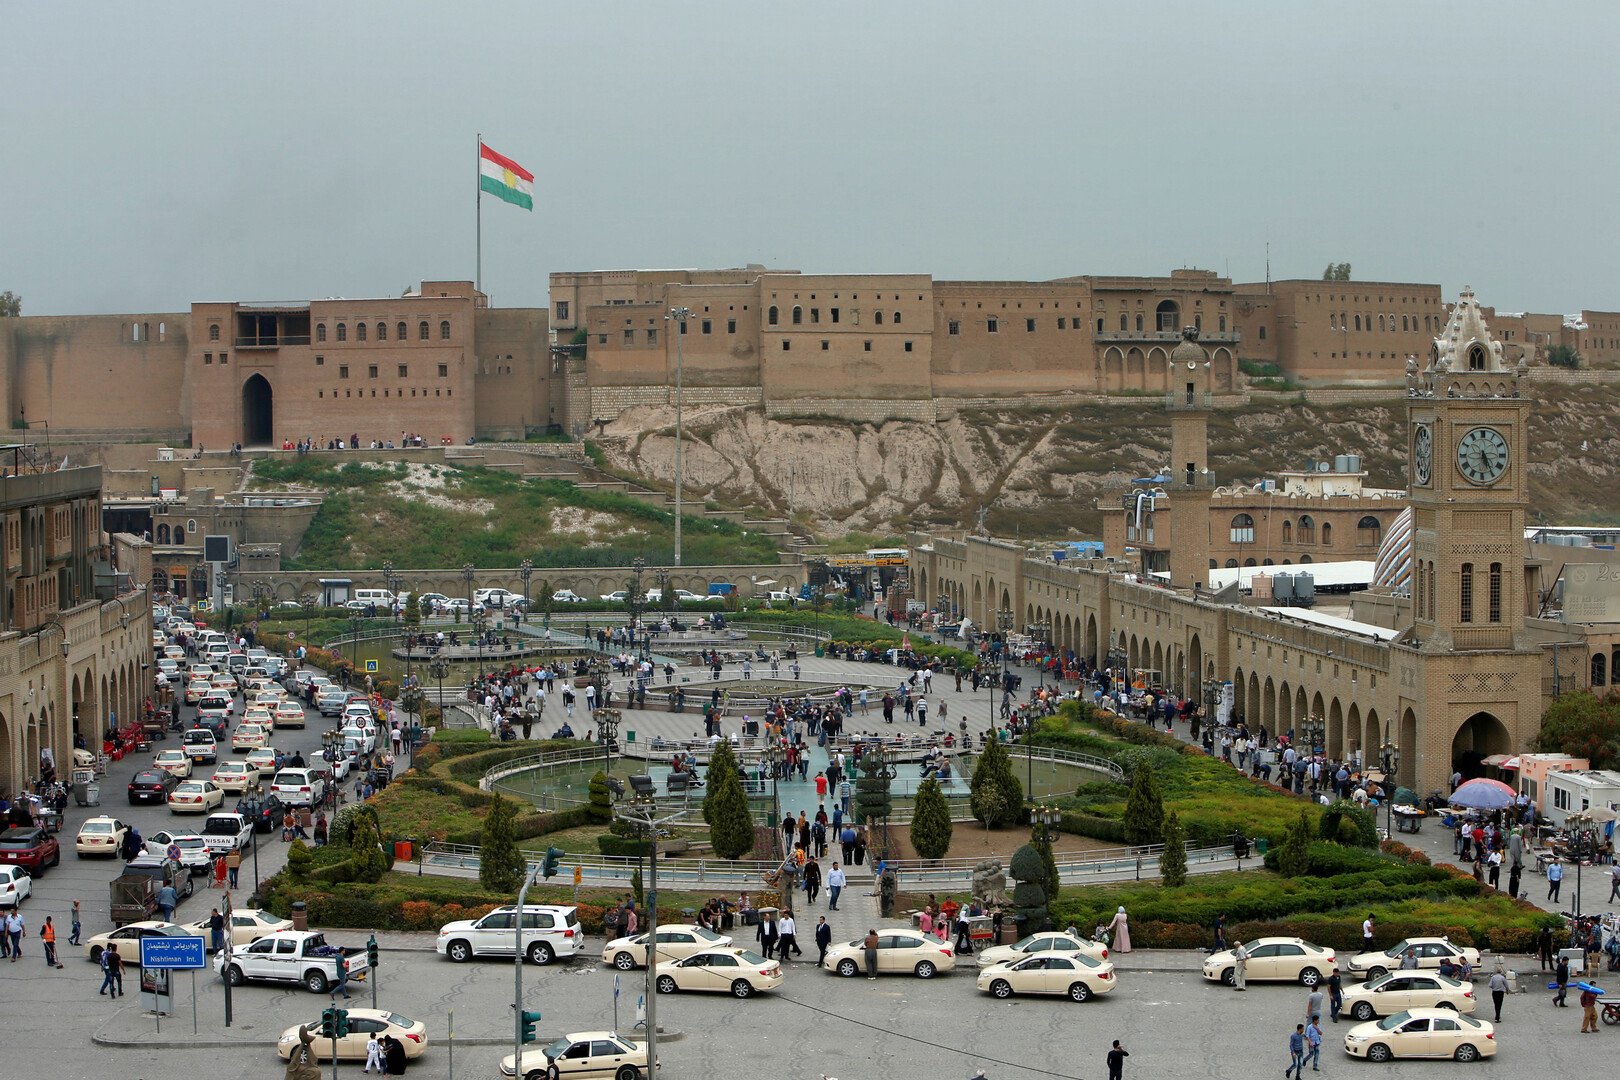 حكومة كردستان العراق تحذر تركيا من تداعيات عمليتها المحتملة شمال سوريا وتدعو لحوار مع الأكراد